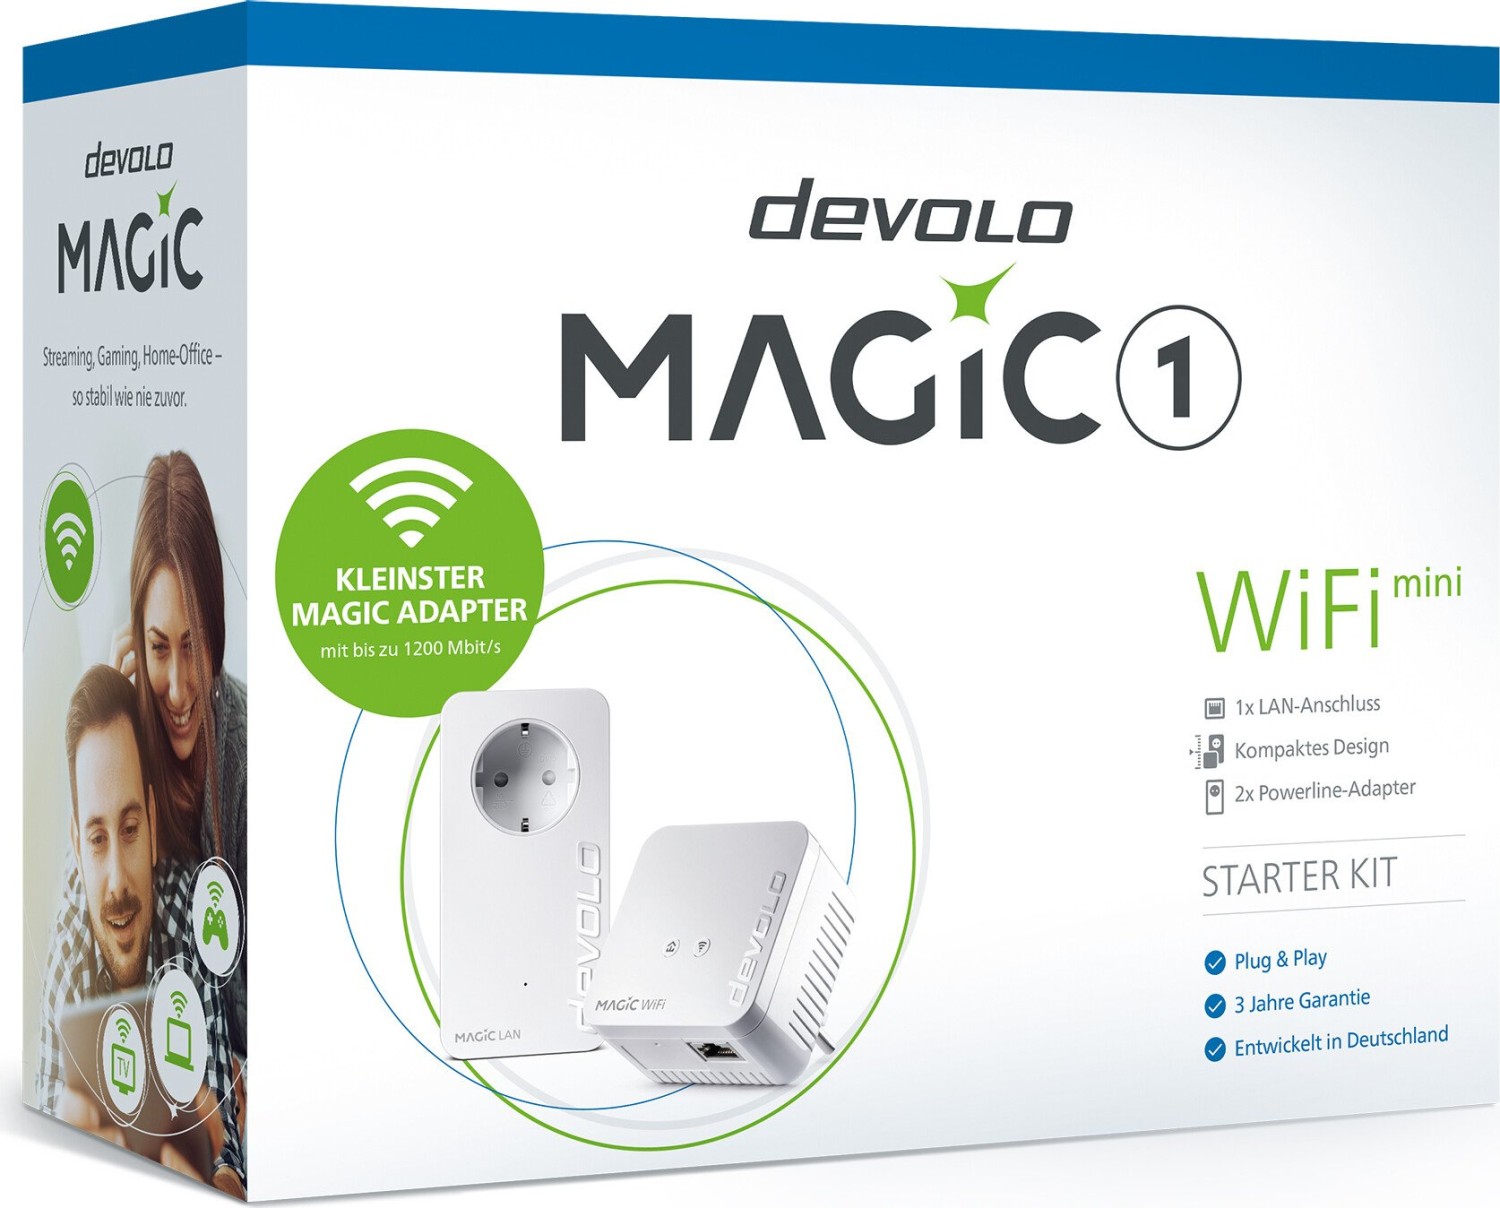 Devolo Magic 1 Gaming Kit bei  im Angebot